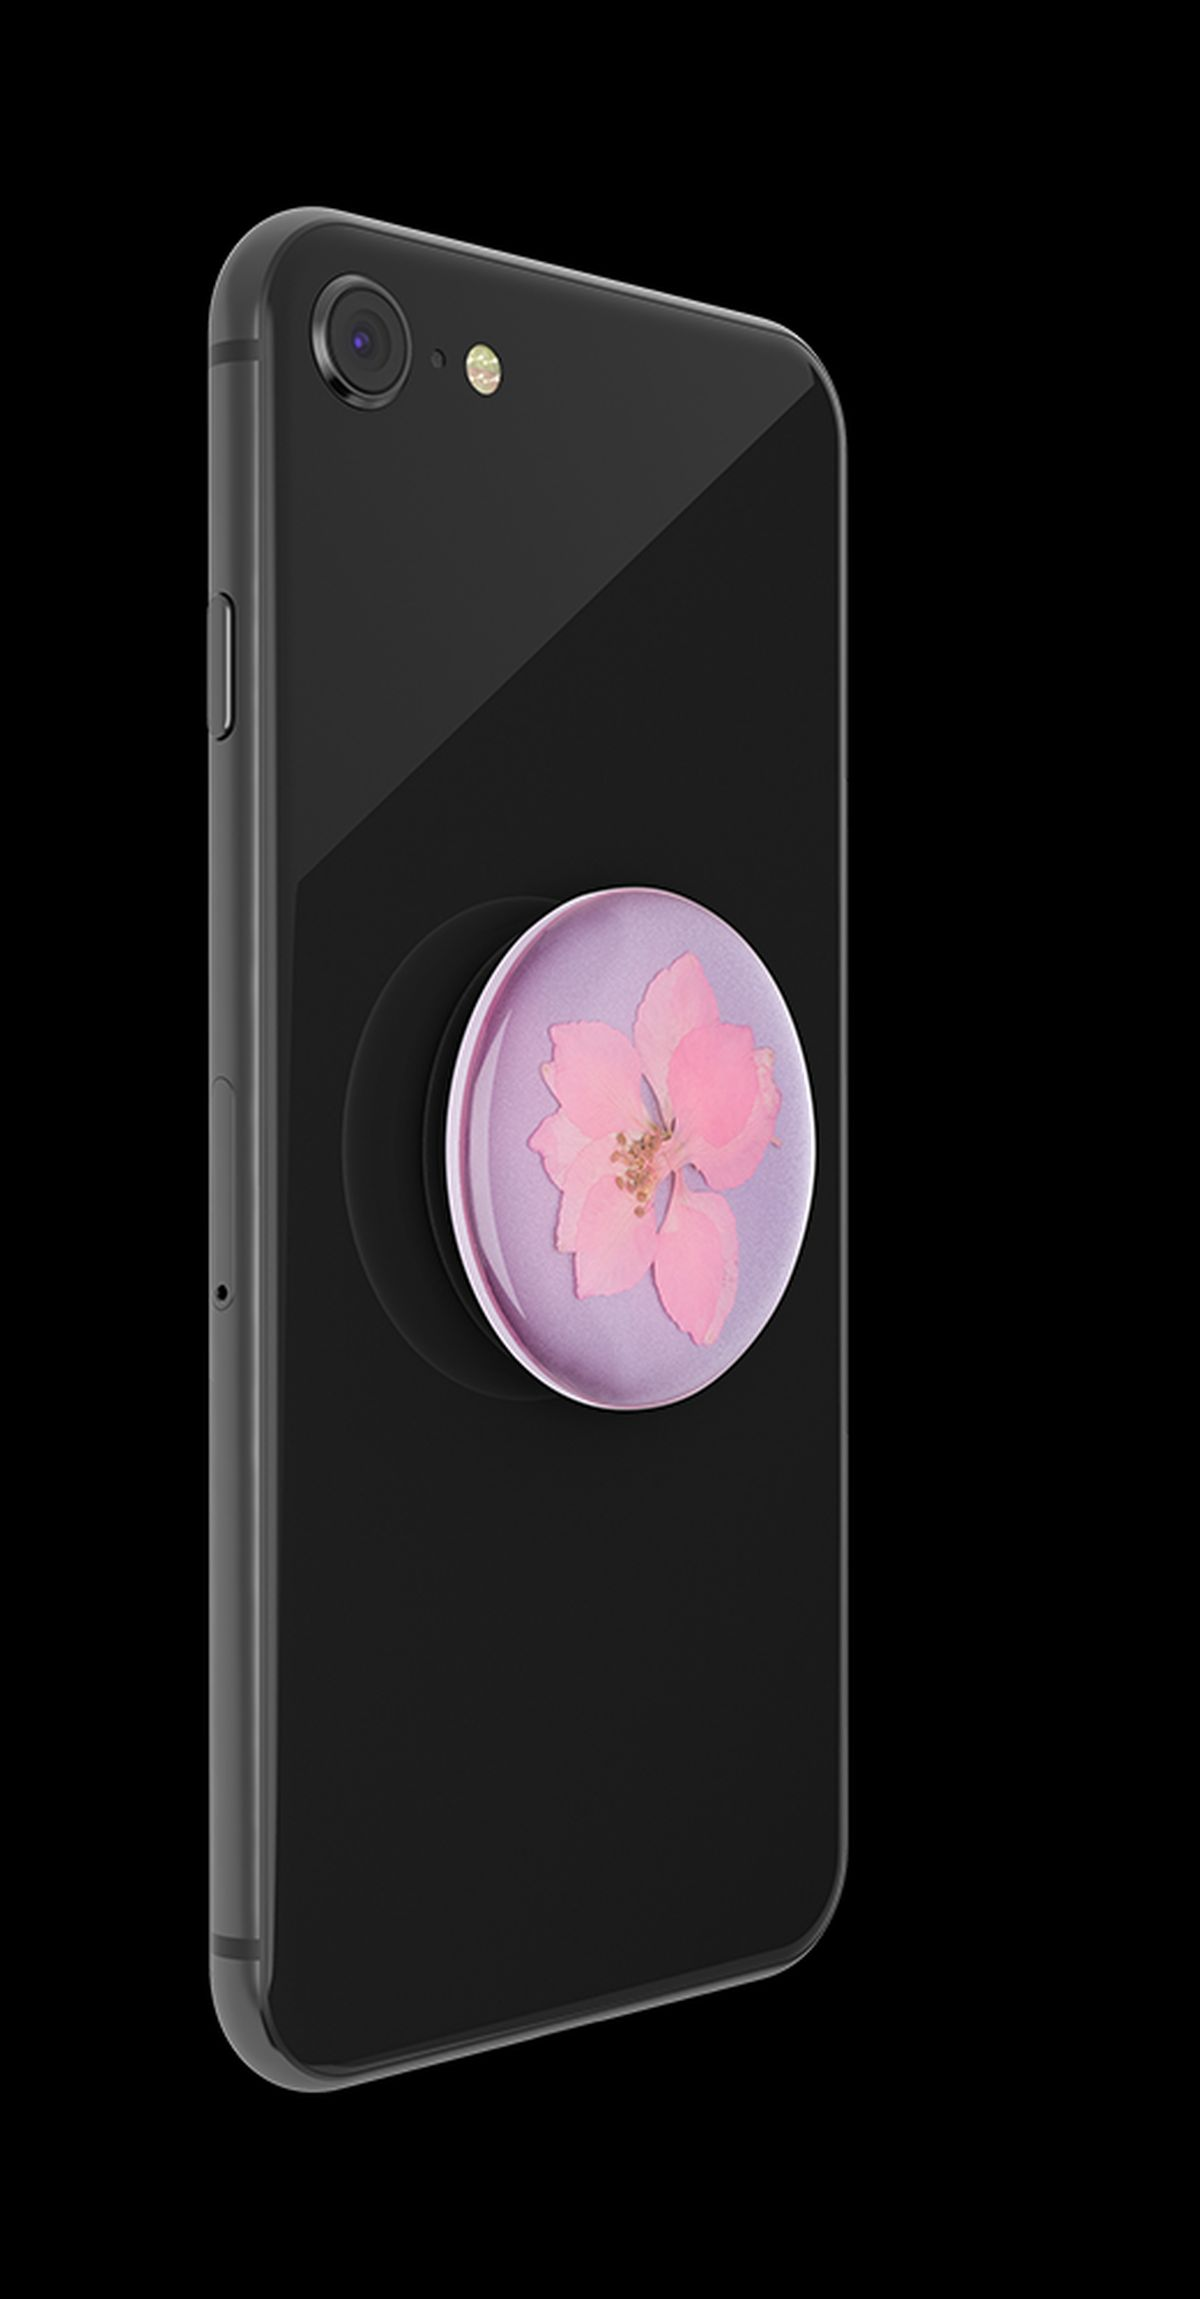 Pink PopGrip Pressed Premium - Flower Delphinium